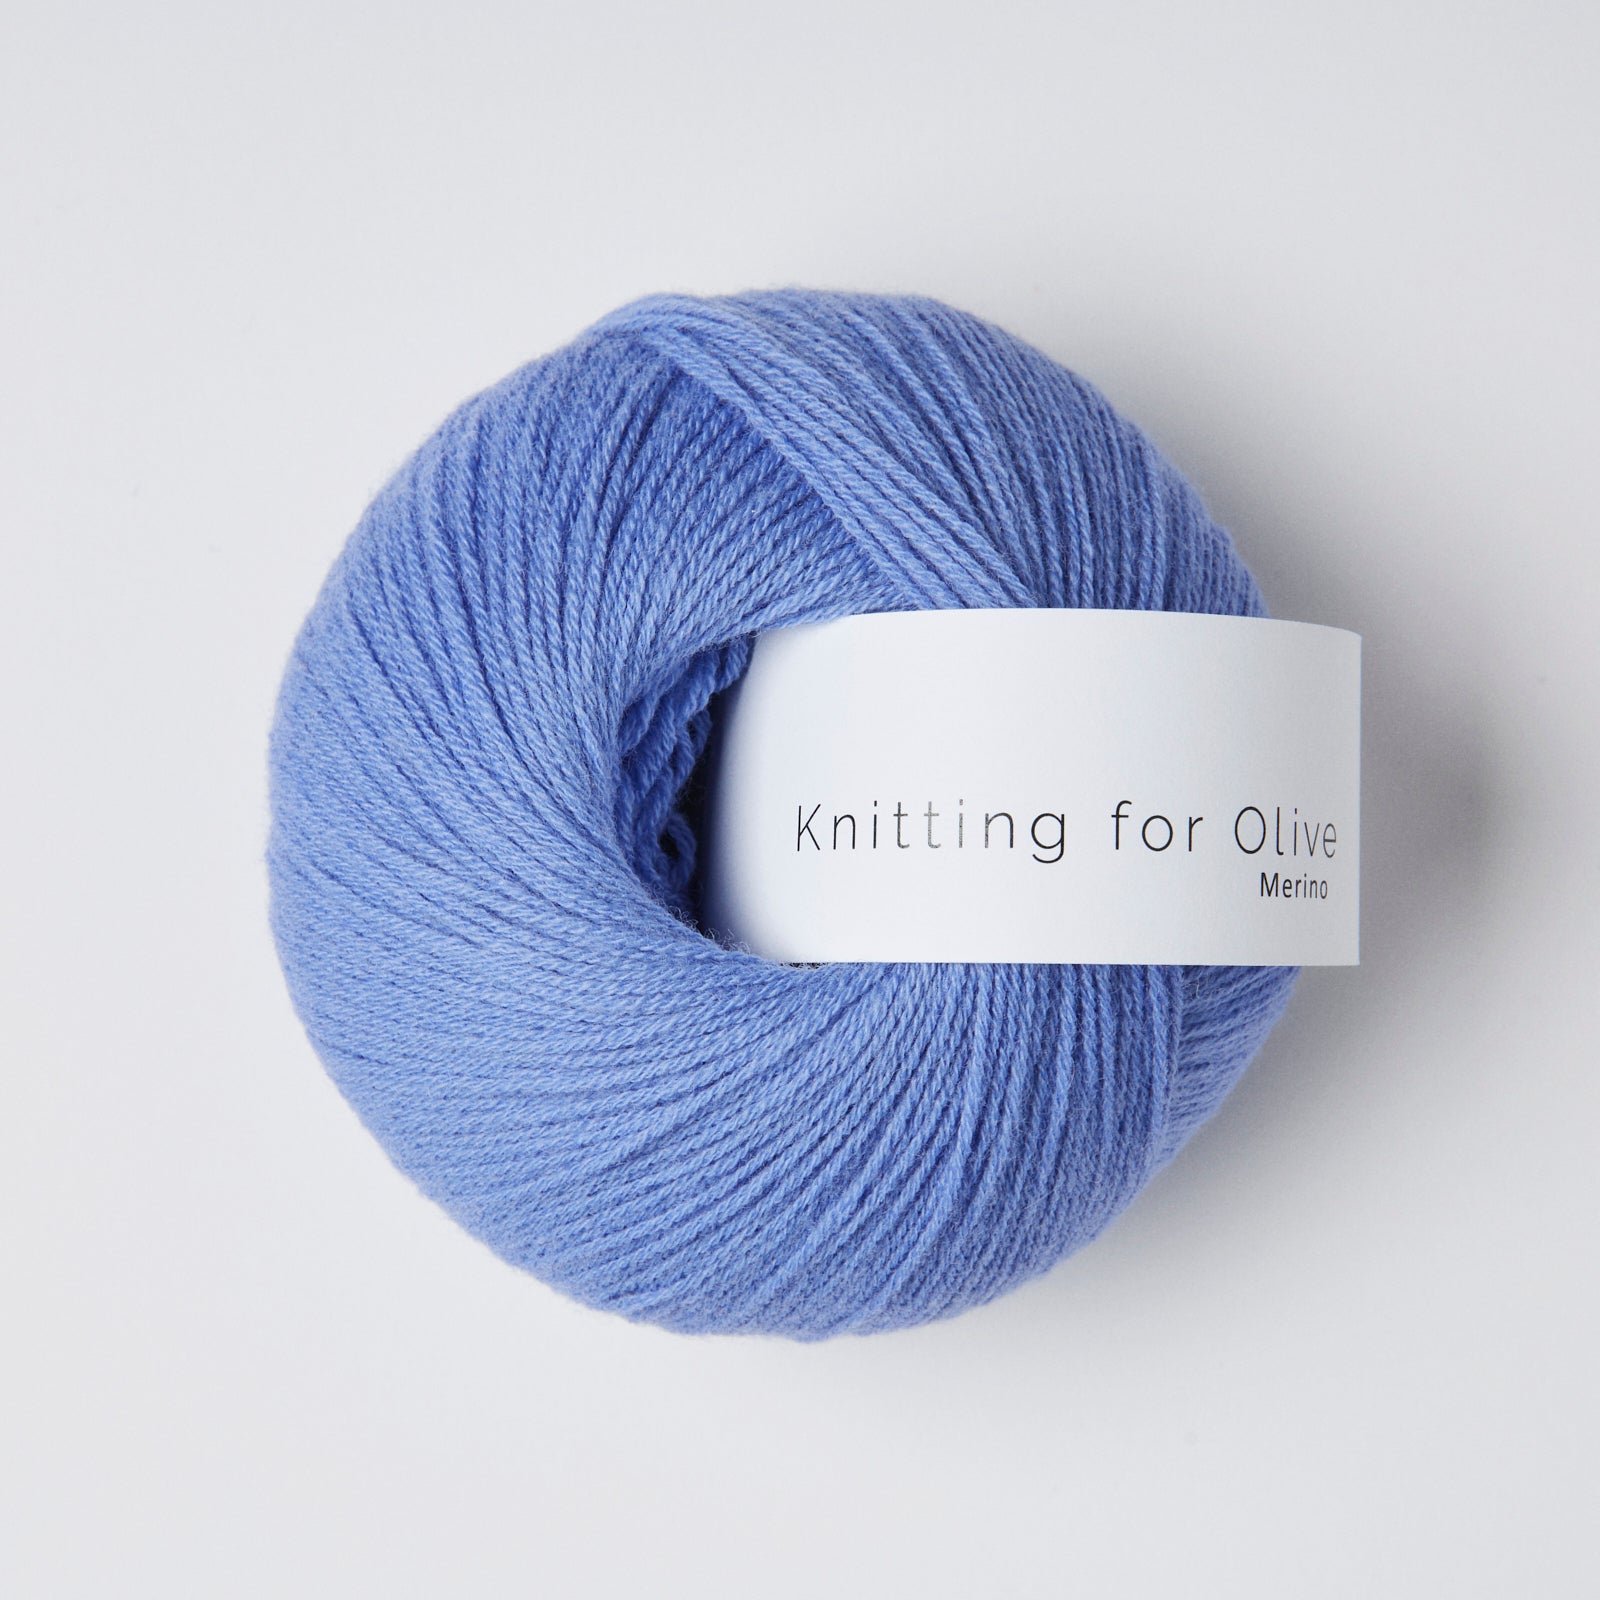 Knitting for Olive Merino - Lavender Blue